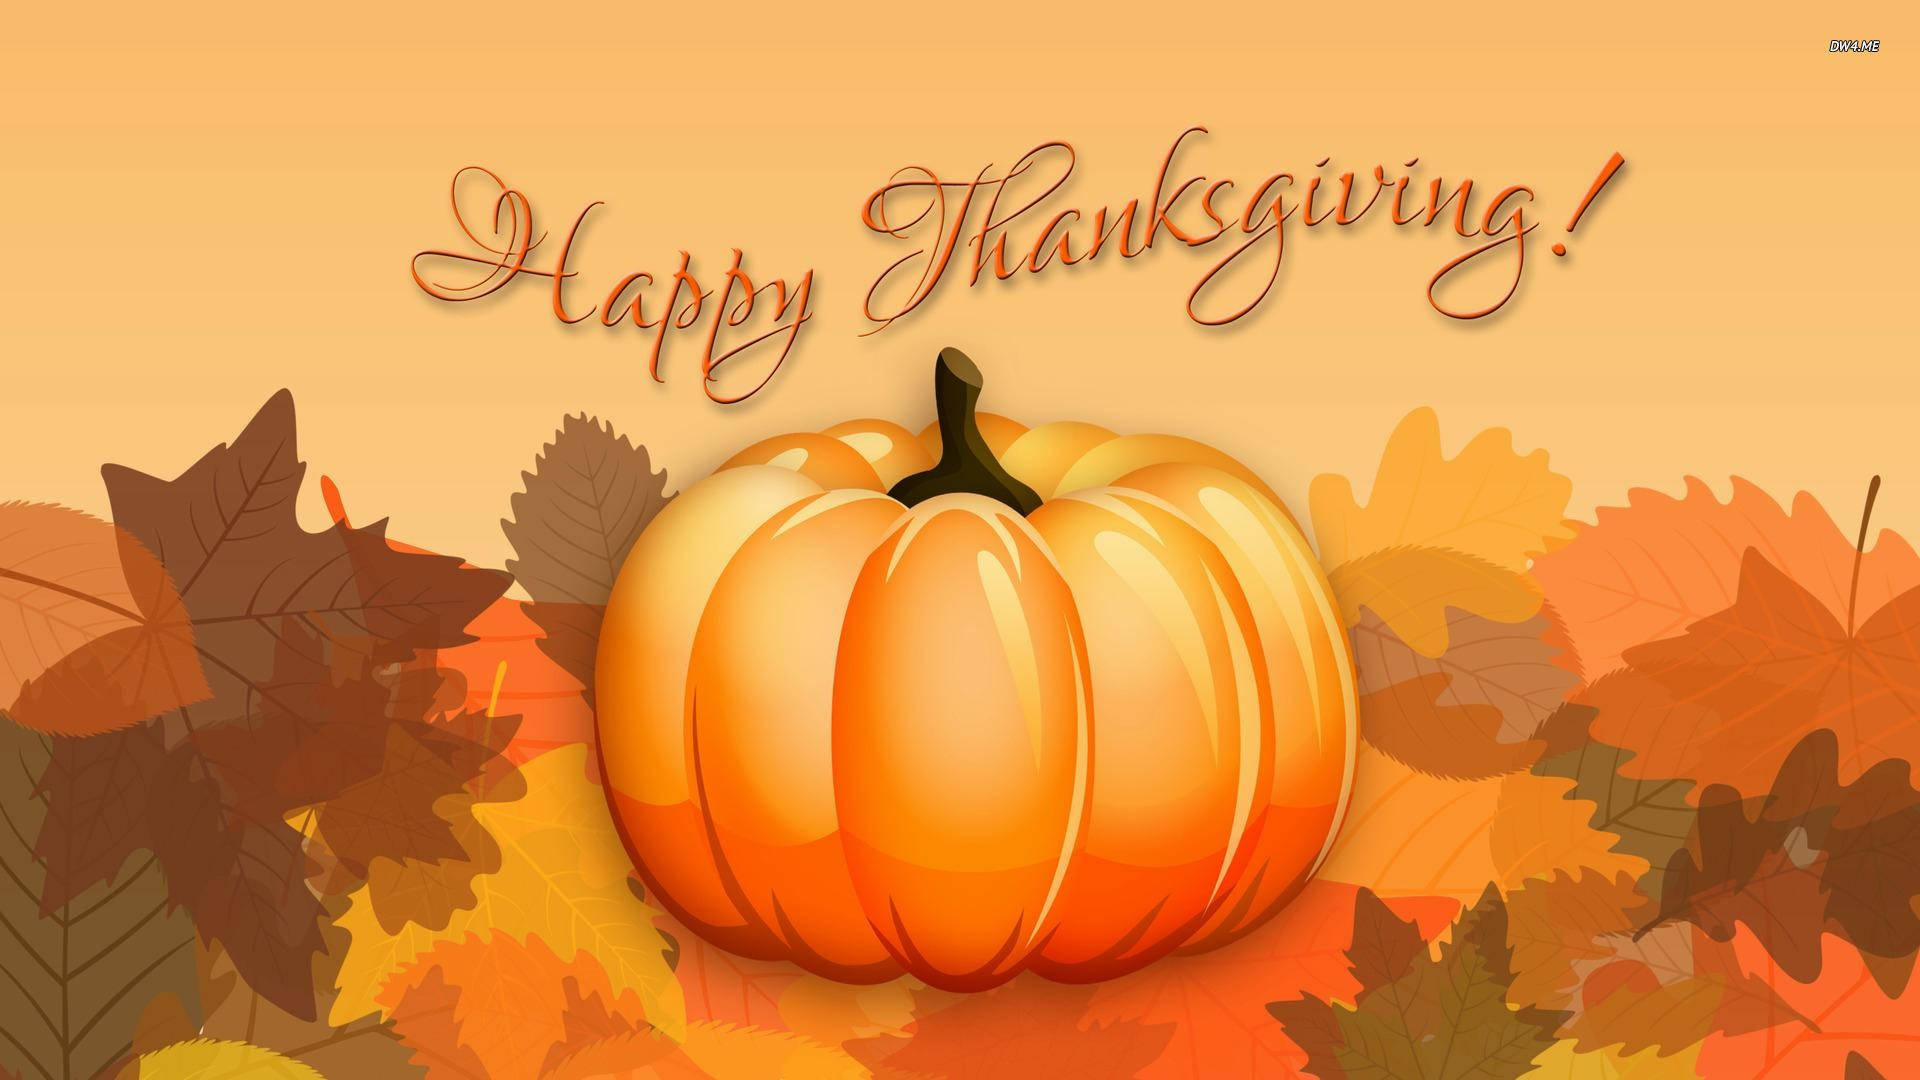 Thanksgiving Day Message Pumpkin Wallpaper